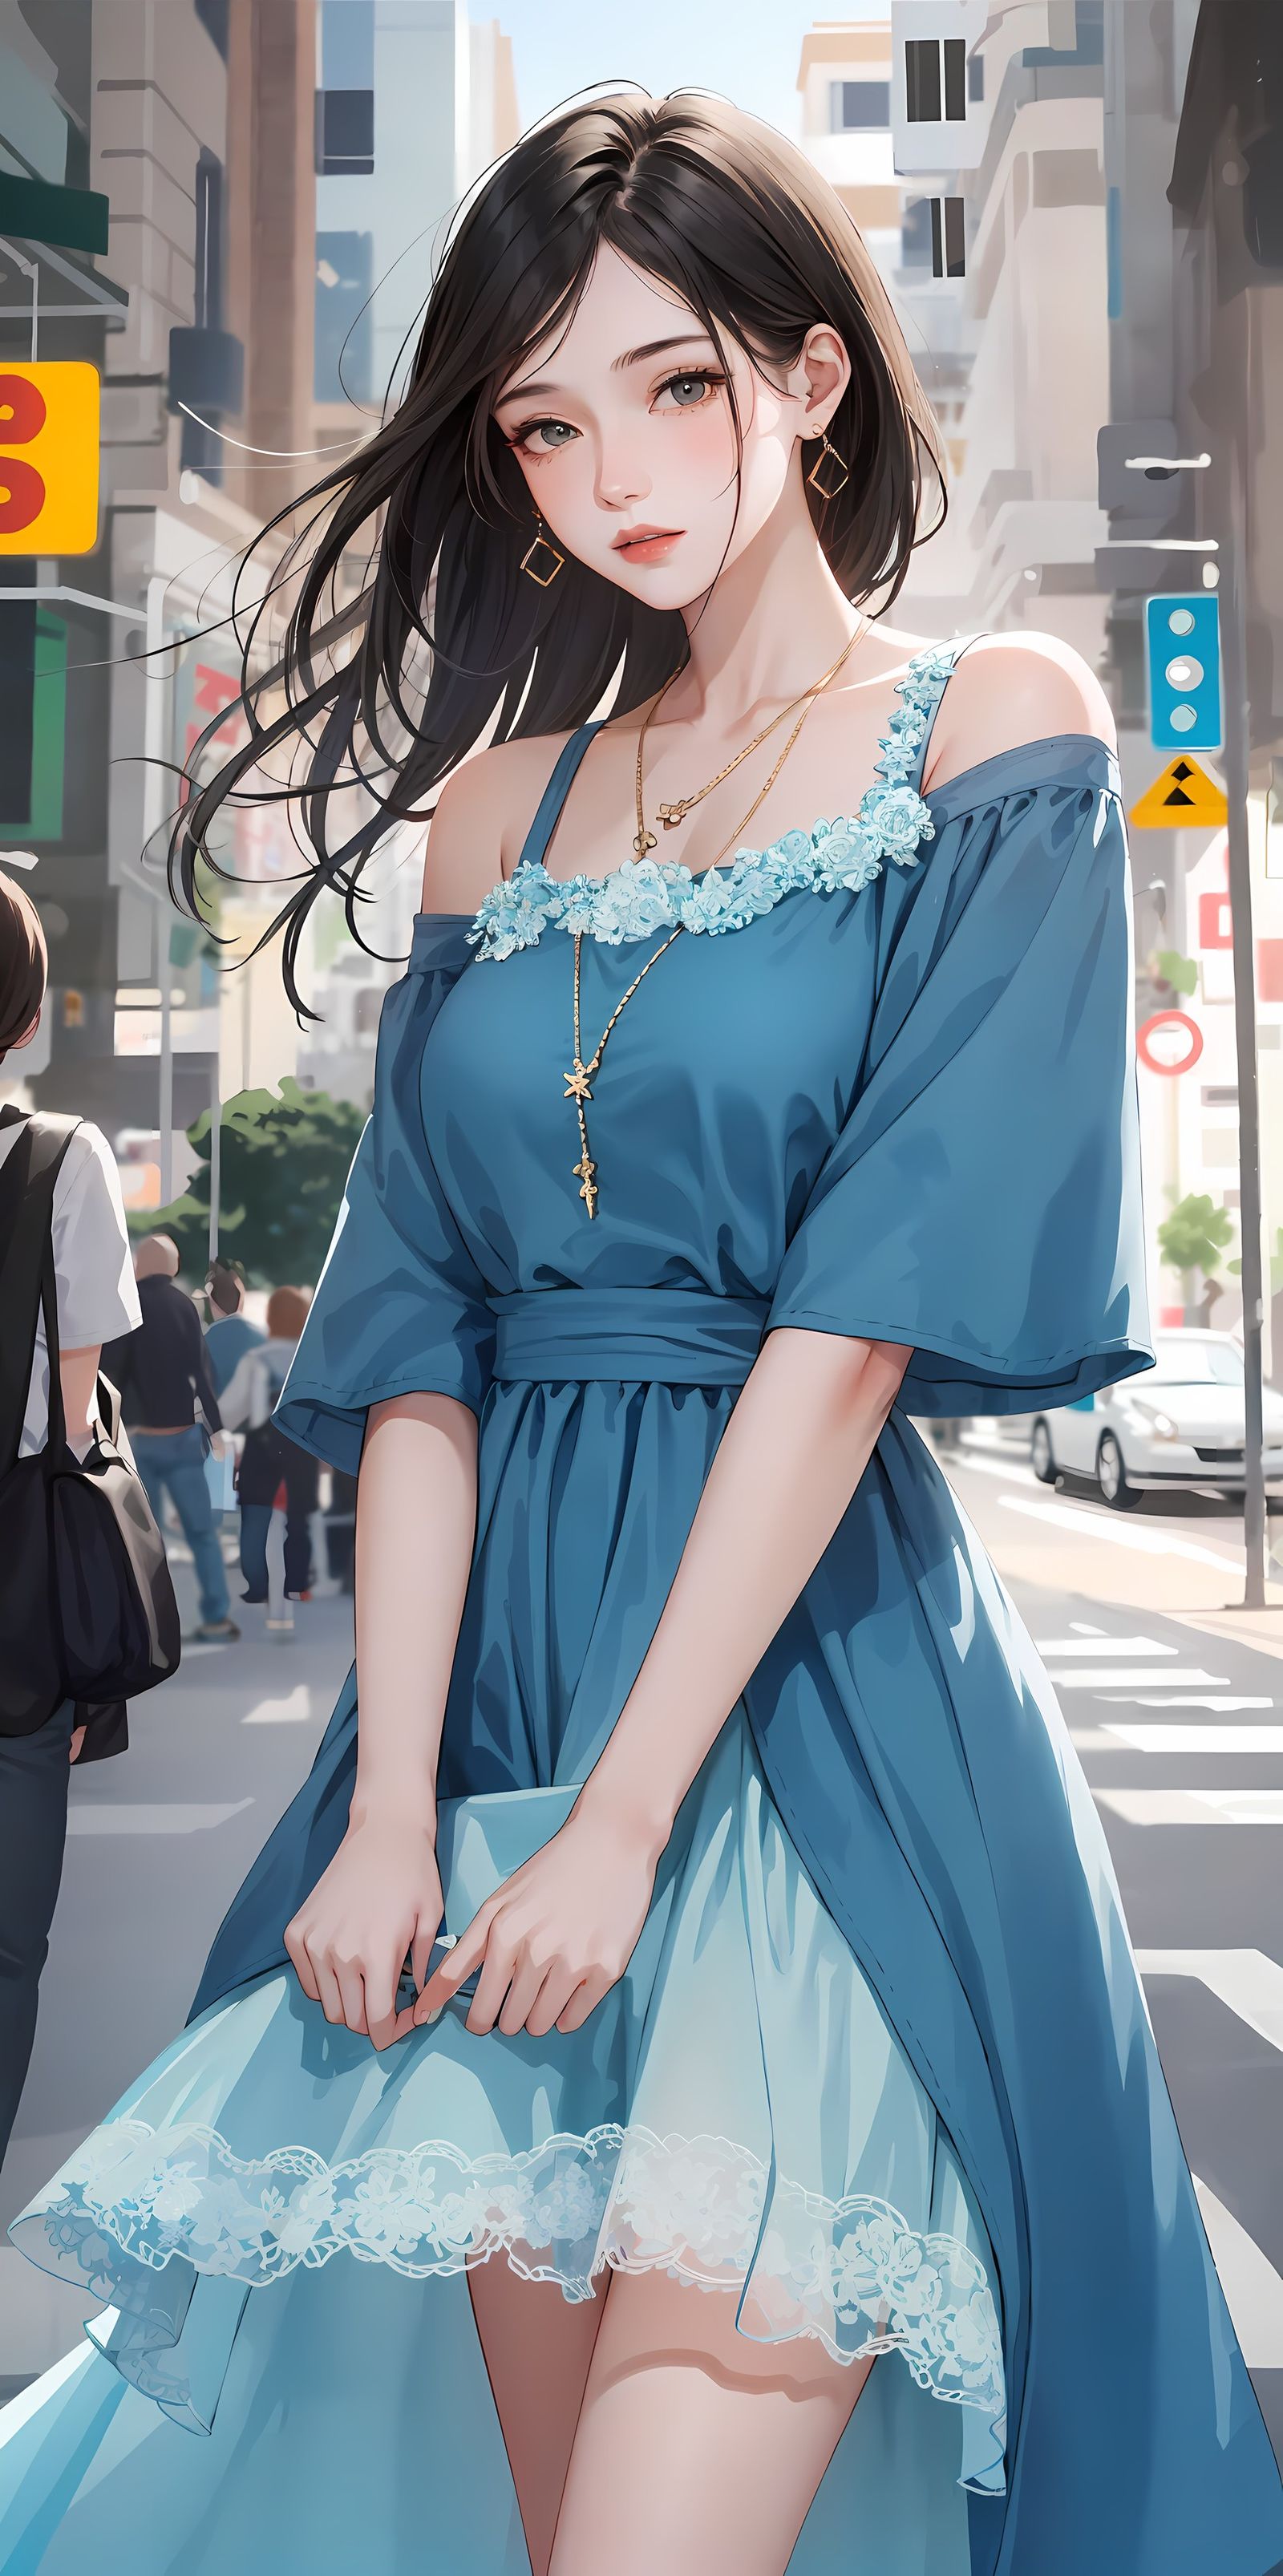 蓝裙少女眼神迷离站街，与城市融为一体插画图片壁纸